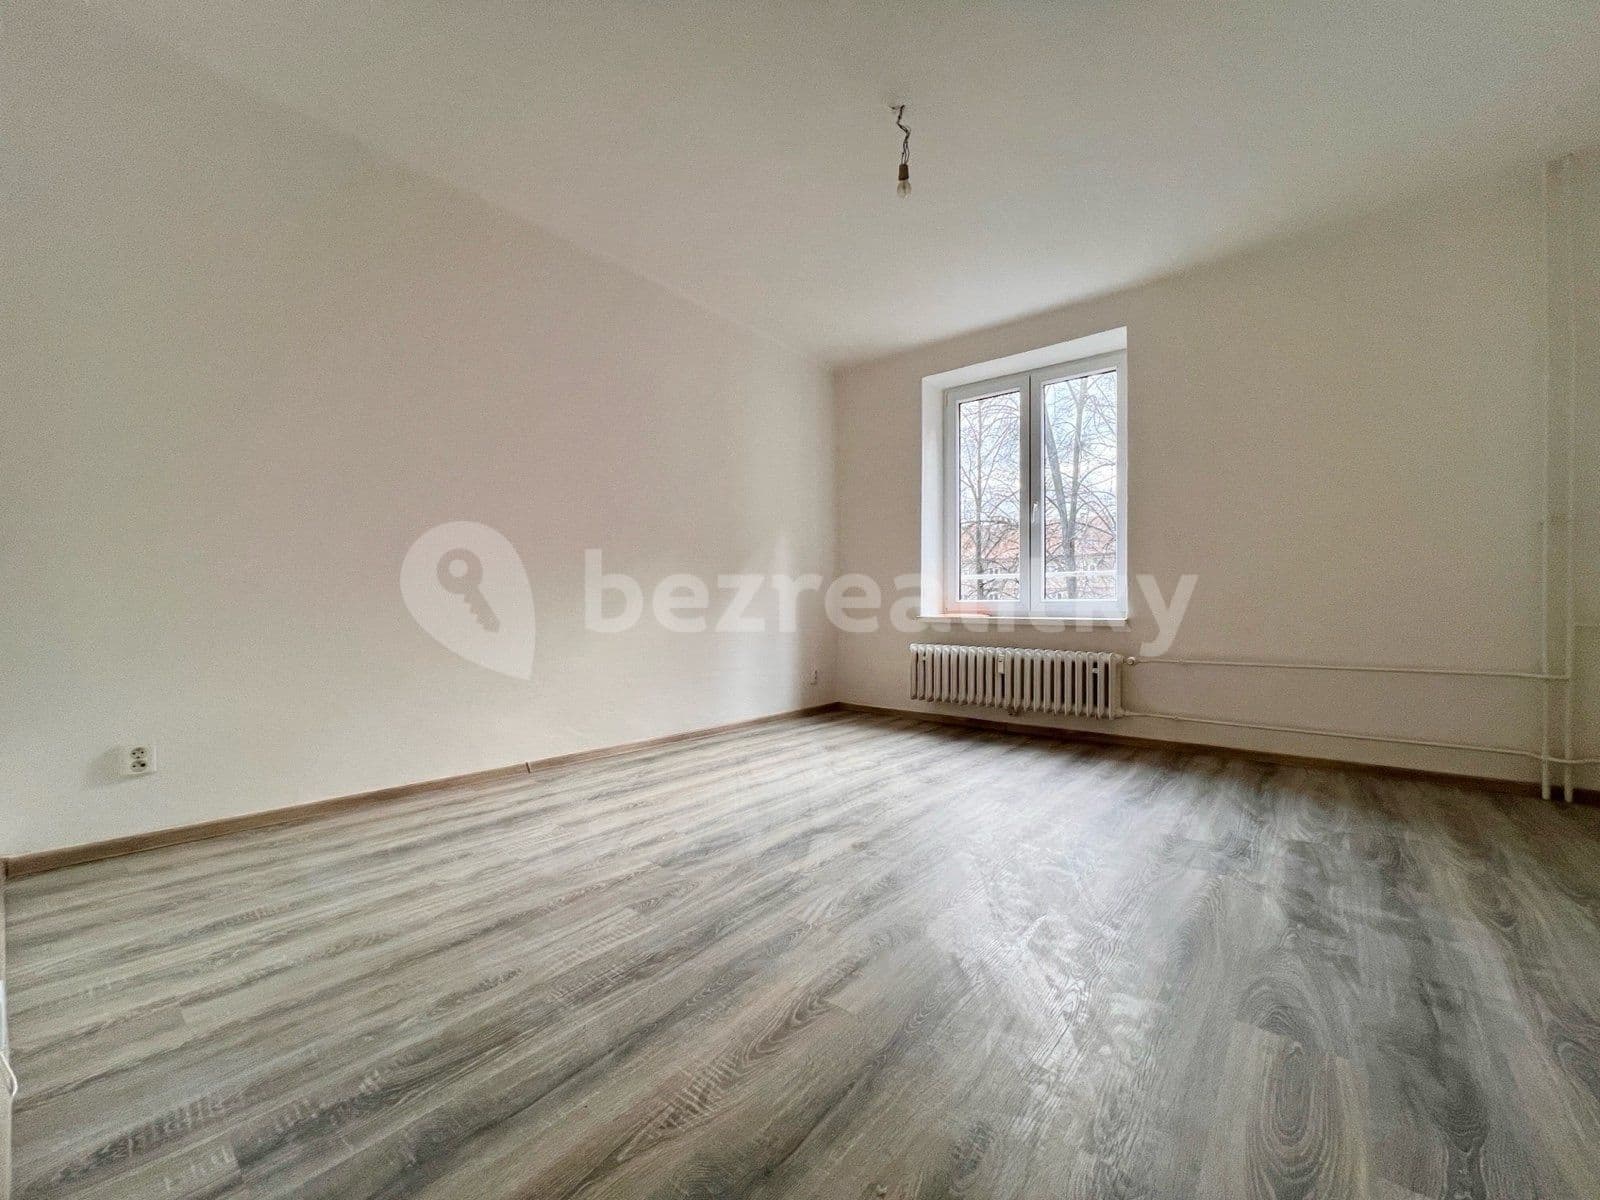 1 bedroom flat to rent, 37 m², náměstí Jana Nerudy, Ostrava, Moravskoslezský Region